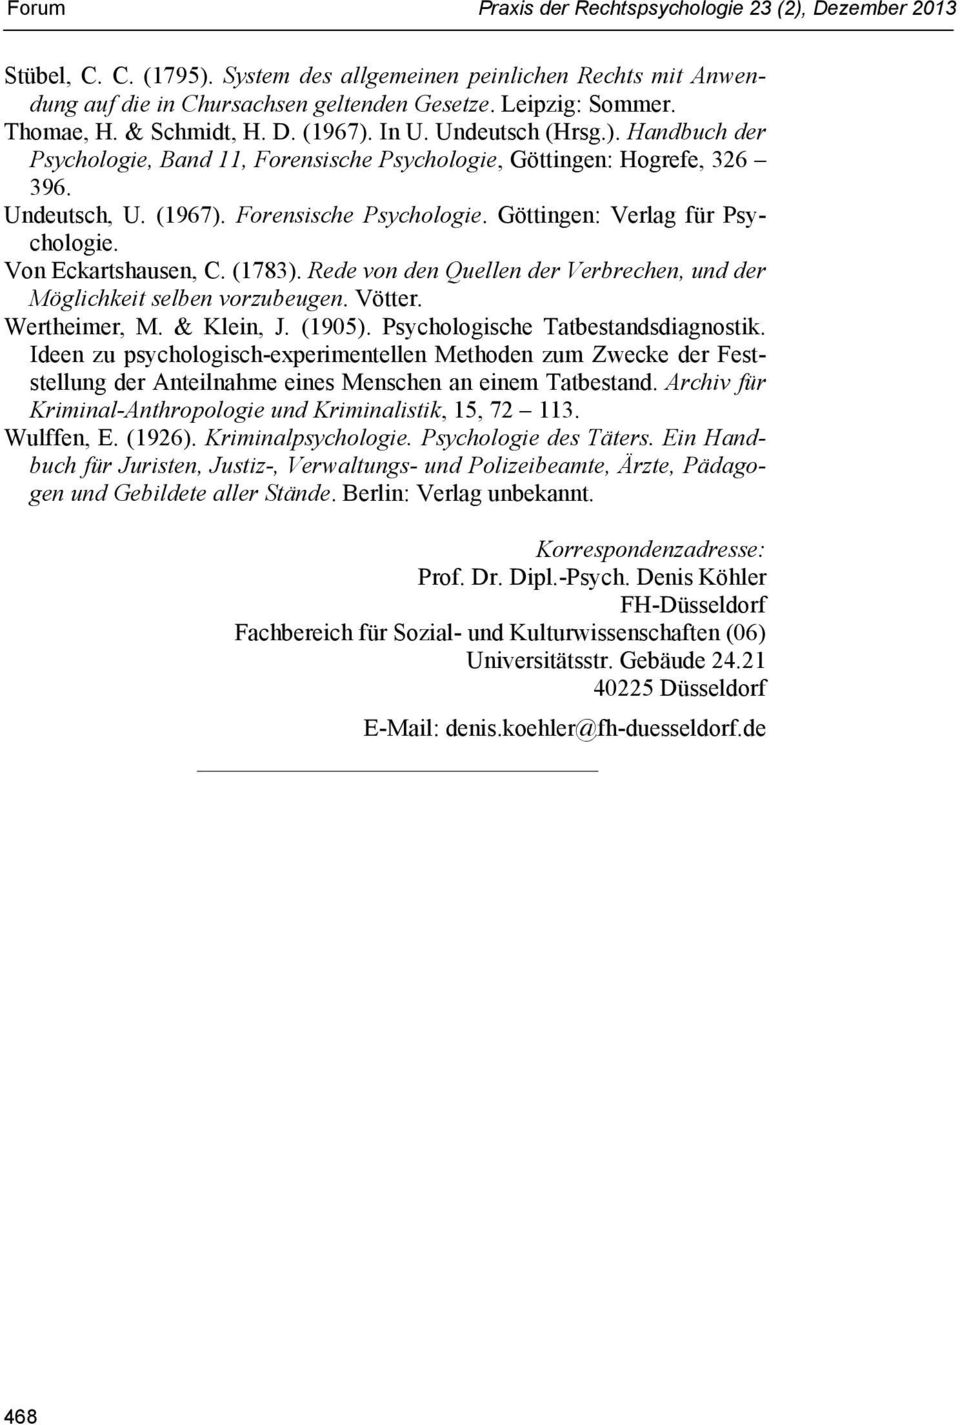 Von Eckartshausen, C. (1783). Rede von den Quellen der Verbrechen, und der Möglichkeit selben vorzubeugen. Vötter. Wertheimer, M. & Klein, J. (1905). Psychologische Tatbestandsdiagnostik.